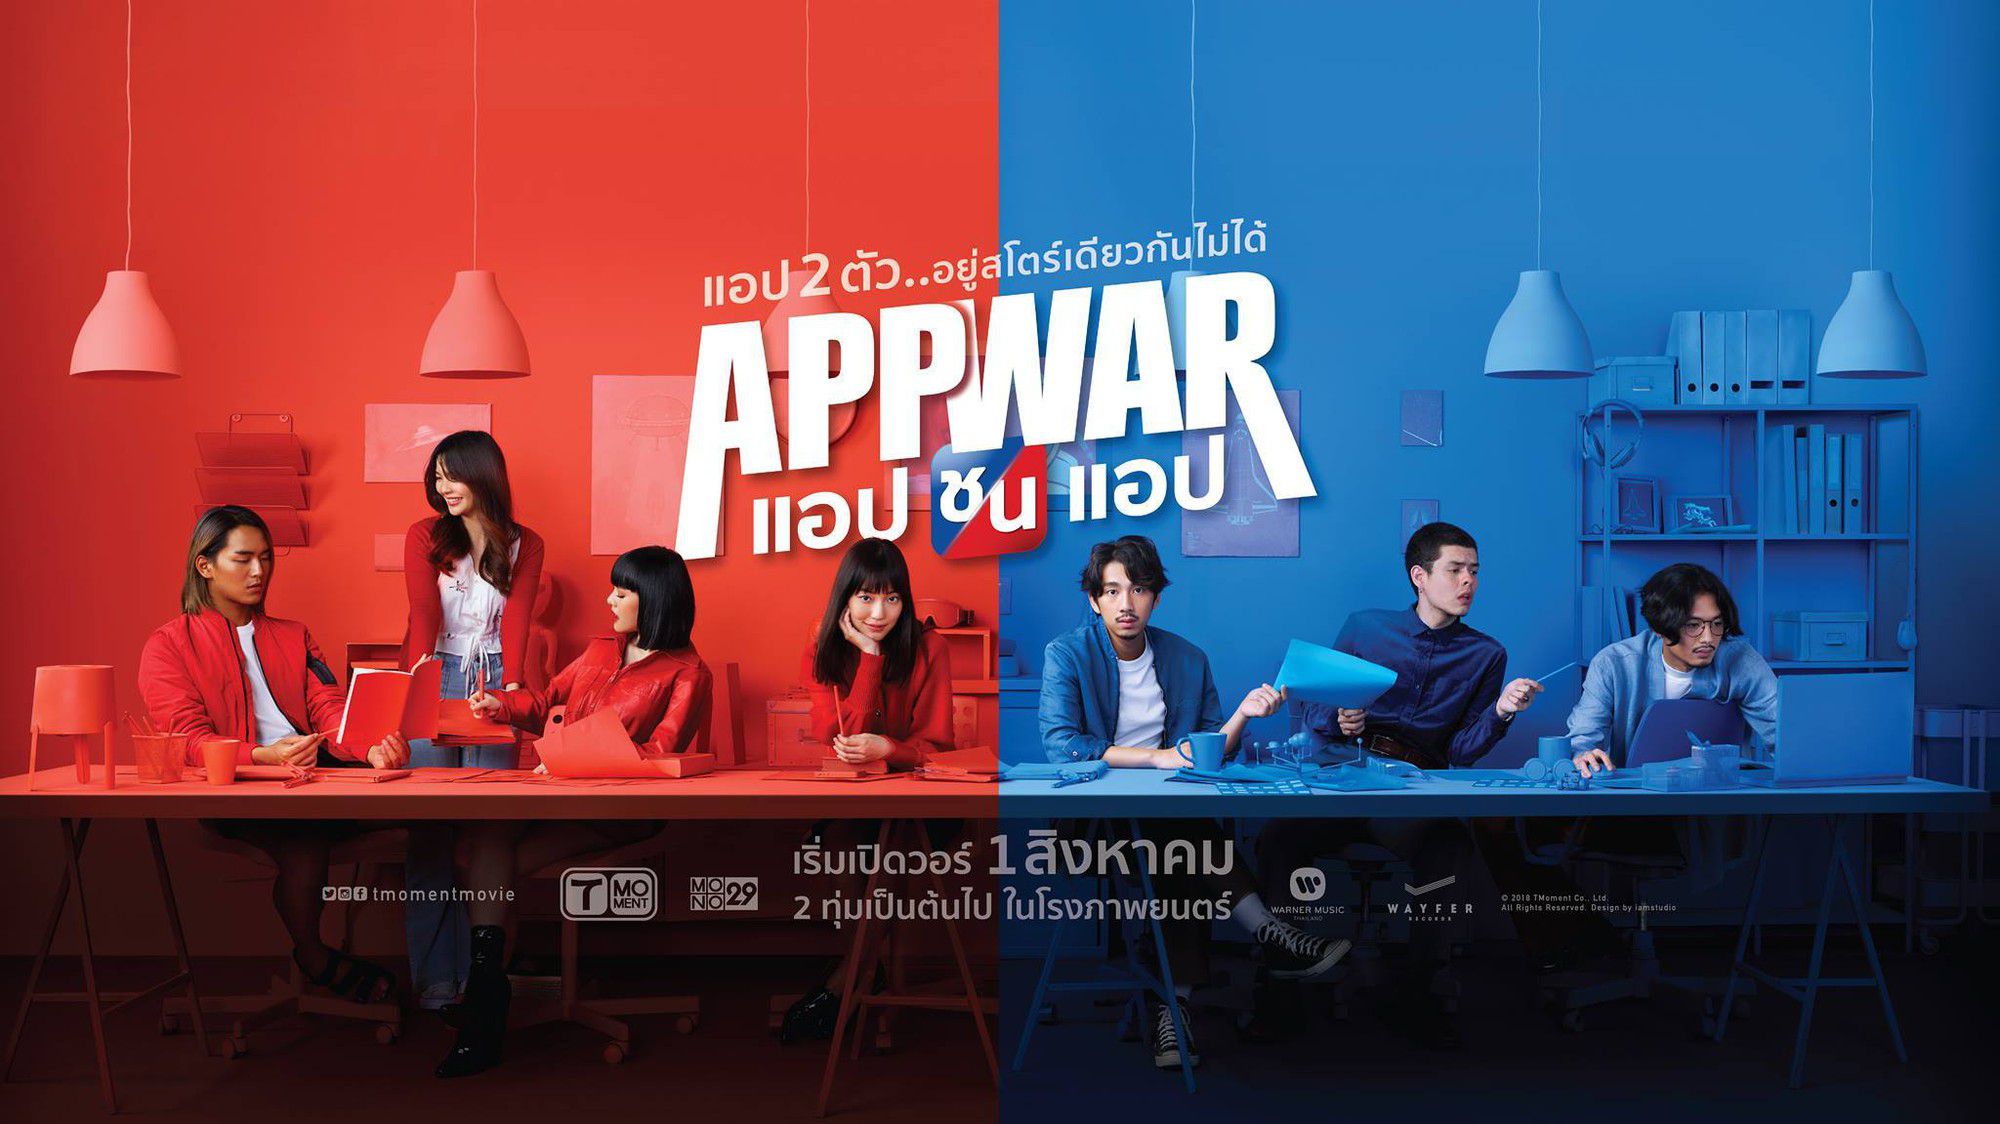 App War: Phim điện ảnh Thái Lan hay về khởi nghiệp của người trẻ (1)